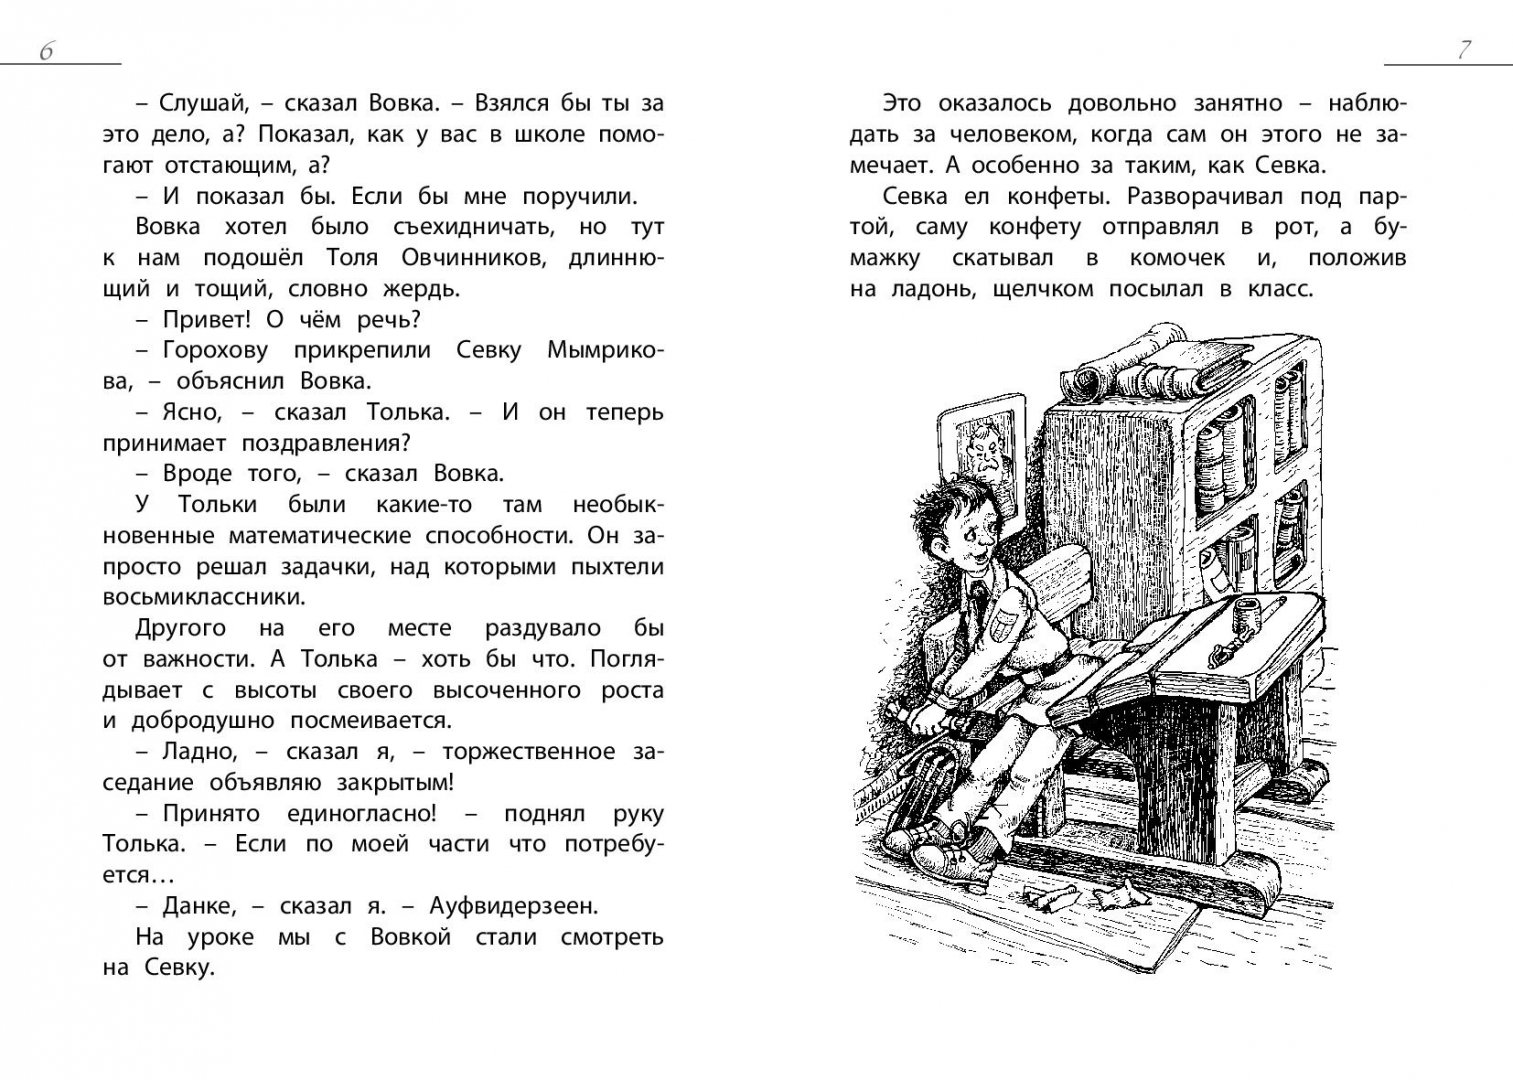 Иллюстрация 3 из 25 для Как я влиял на Севку - Геомар Куликов | Лабиринт - книги. Источник: Лабиринт